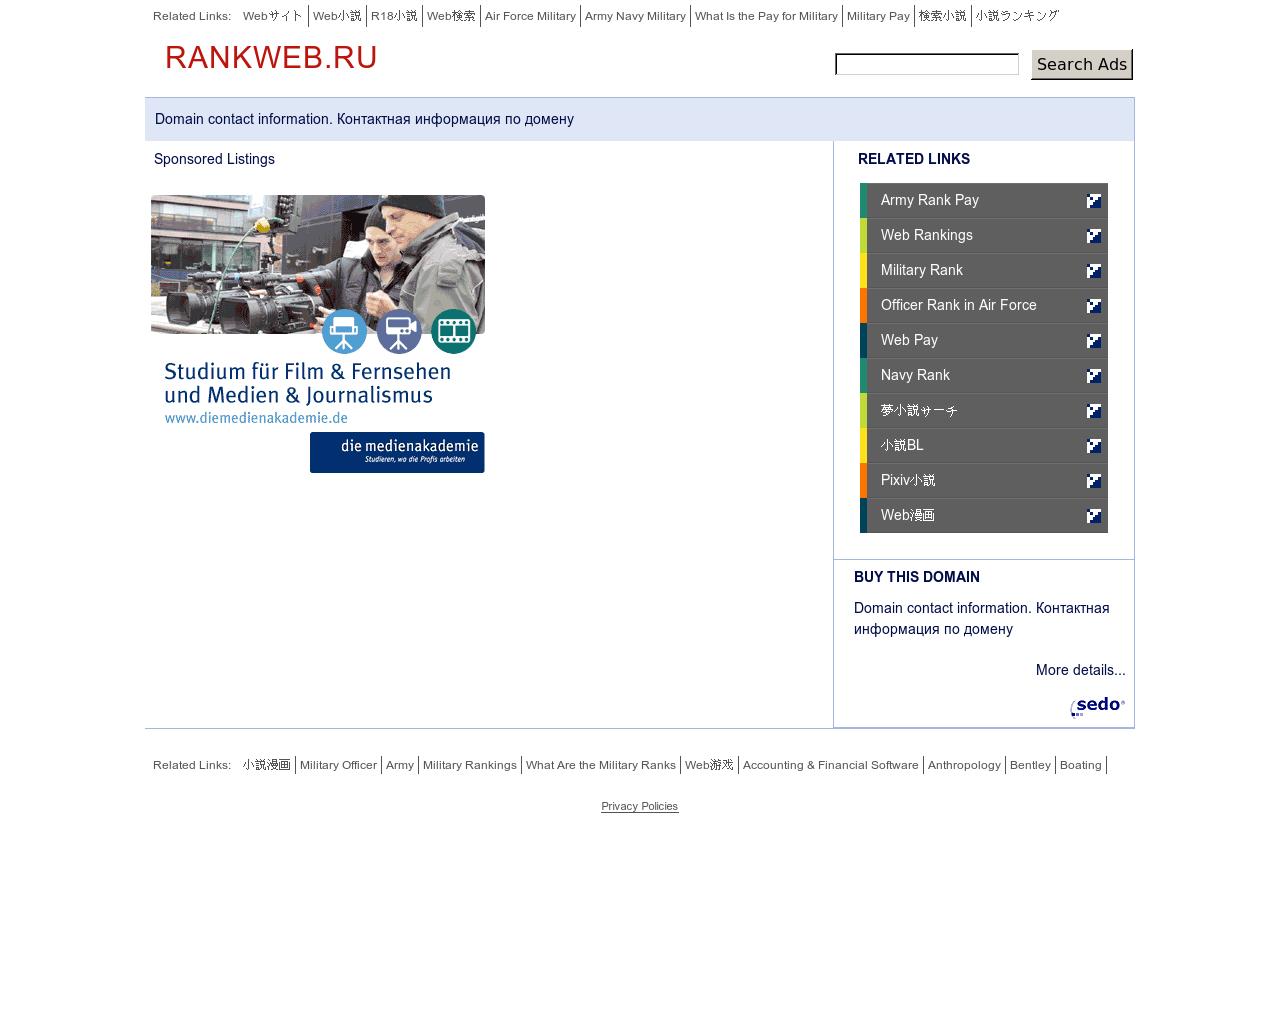 Изображение сайта rankweb.ru в разрешении 1280x1024